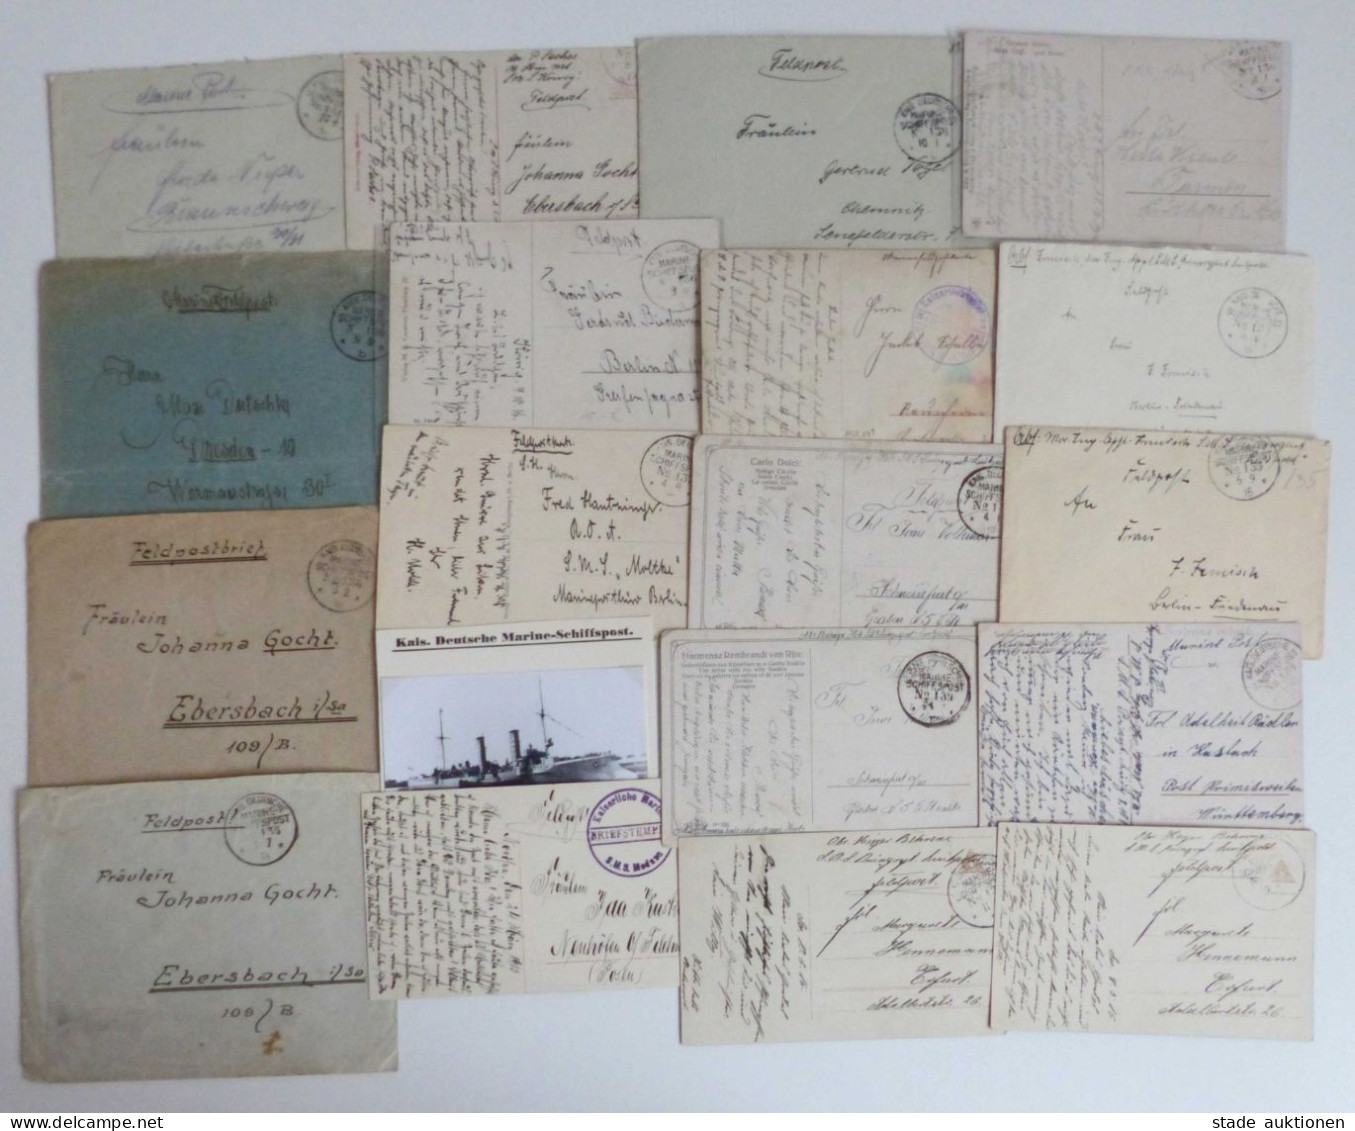 Deutsche Marine Schiffspost Sammlung bis ca. 1918 umfangreich mit hunderten Belegen u. Postkarten in 3 Kartons, teilweis